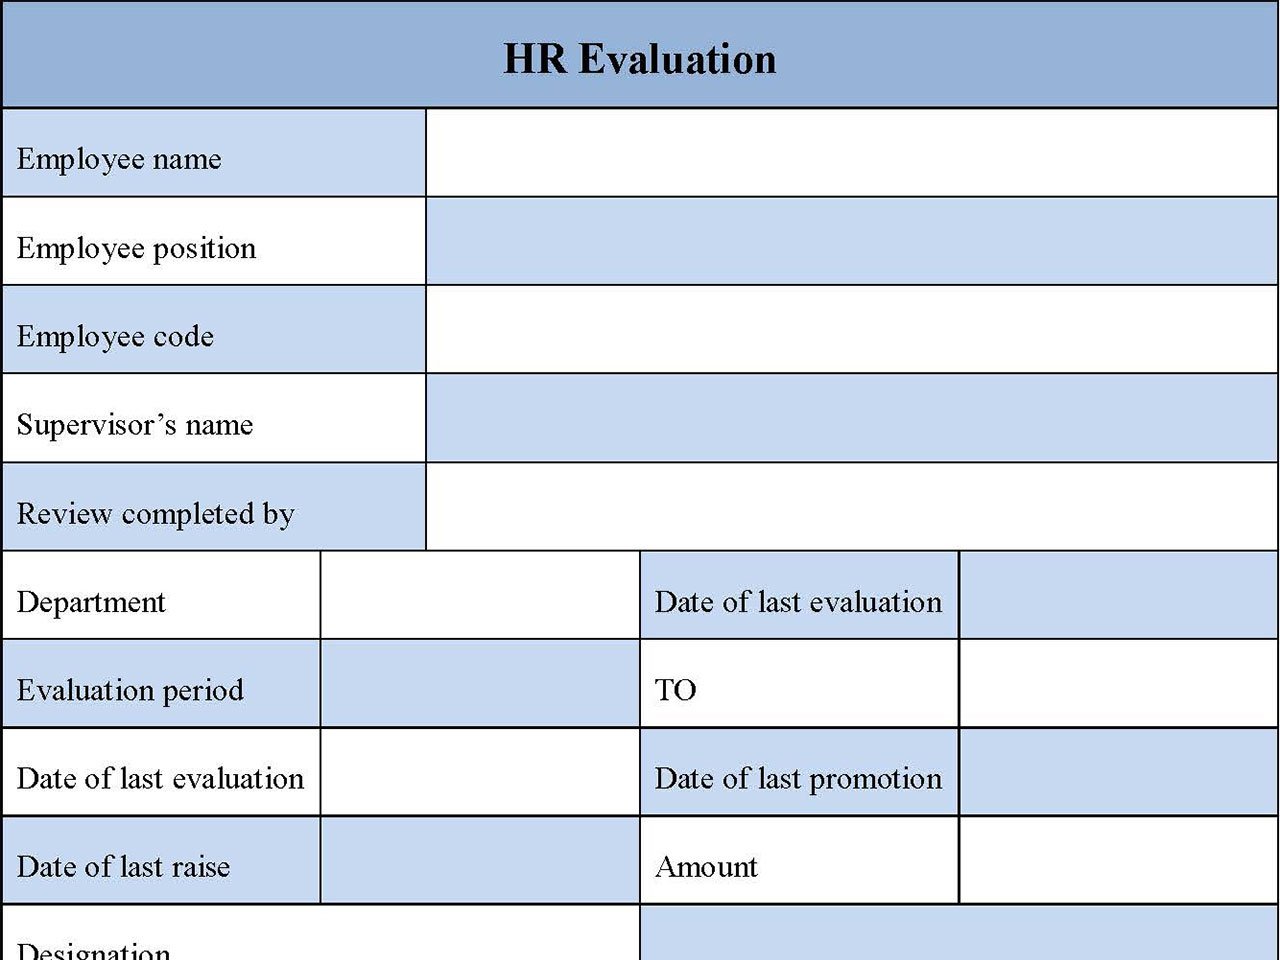 HR Evaluation Form